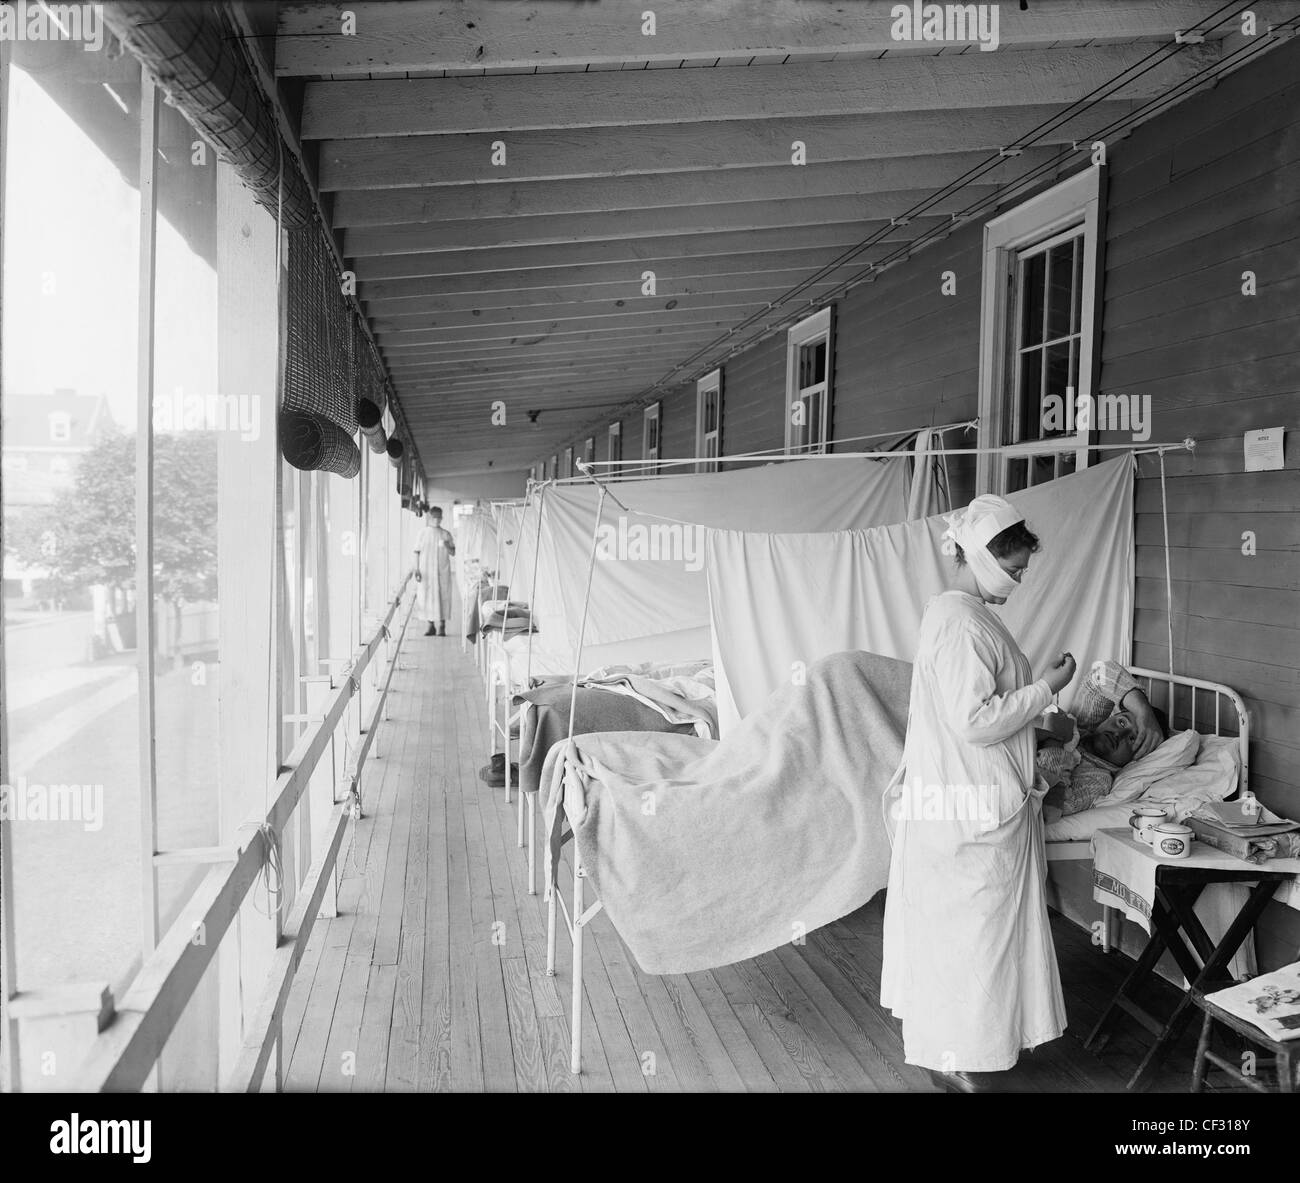 Krankenschwester behandelnden Patienten auf Veranda mit Überlauf der Betten  im Walter Reed Hospital (Washington, DC), Grippe-Gemeinde. zwischen  1910-1920 Stockfotografie - Alamy